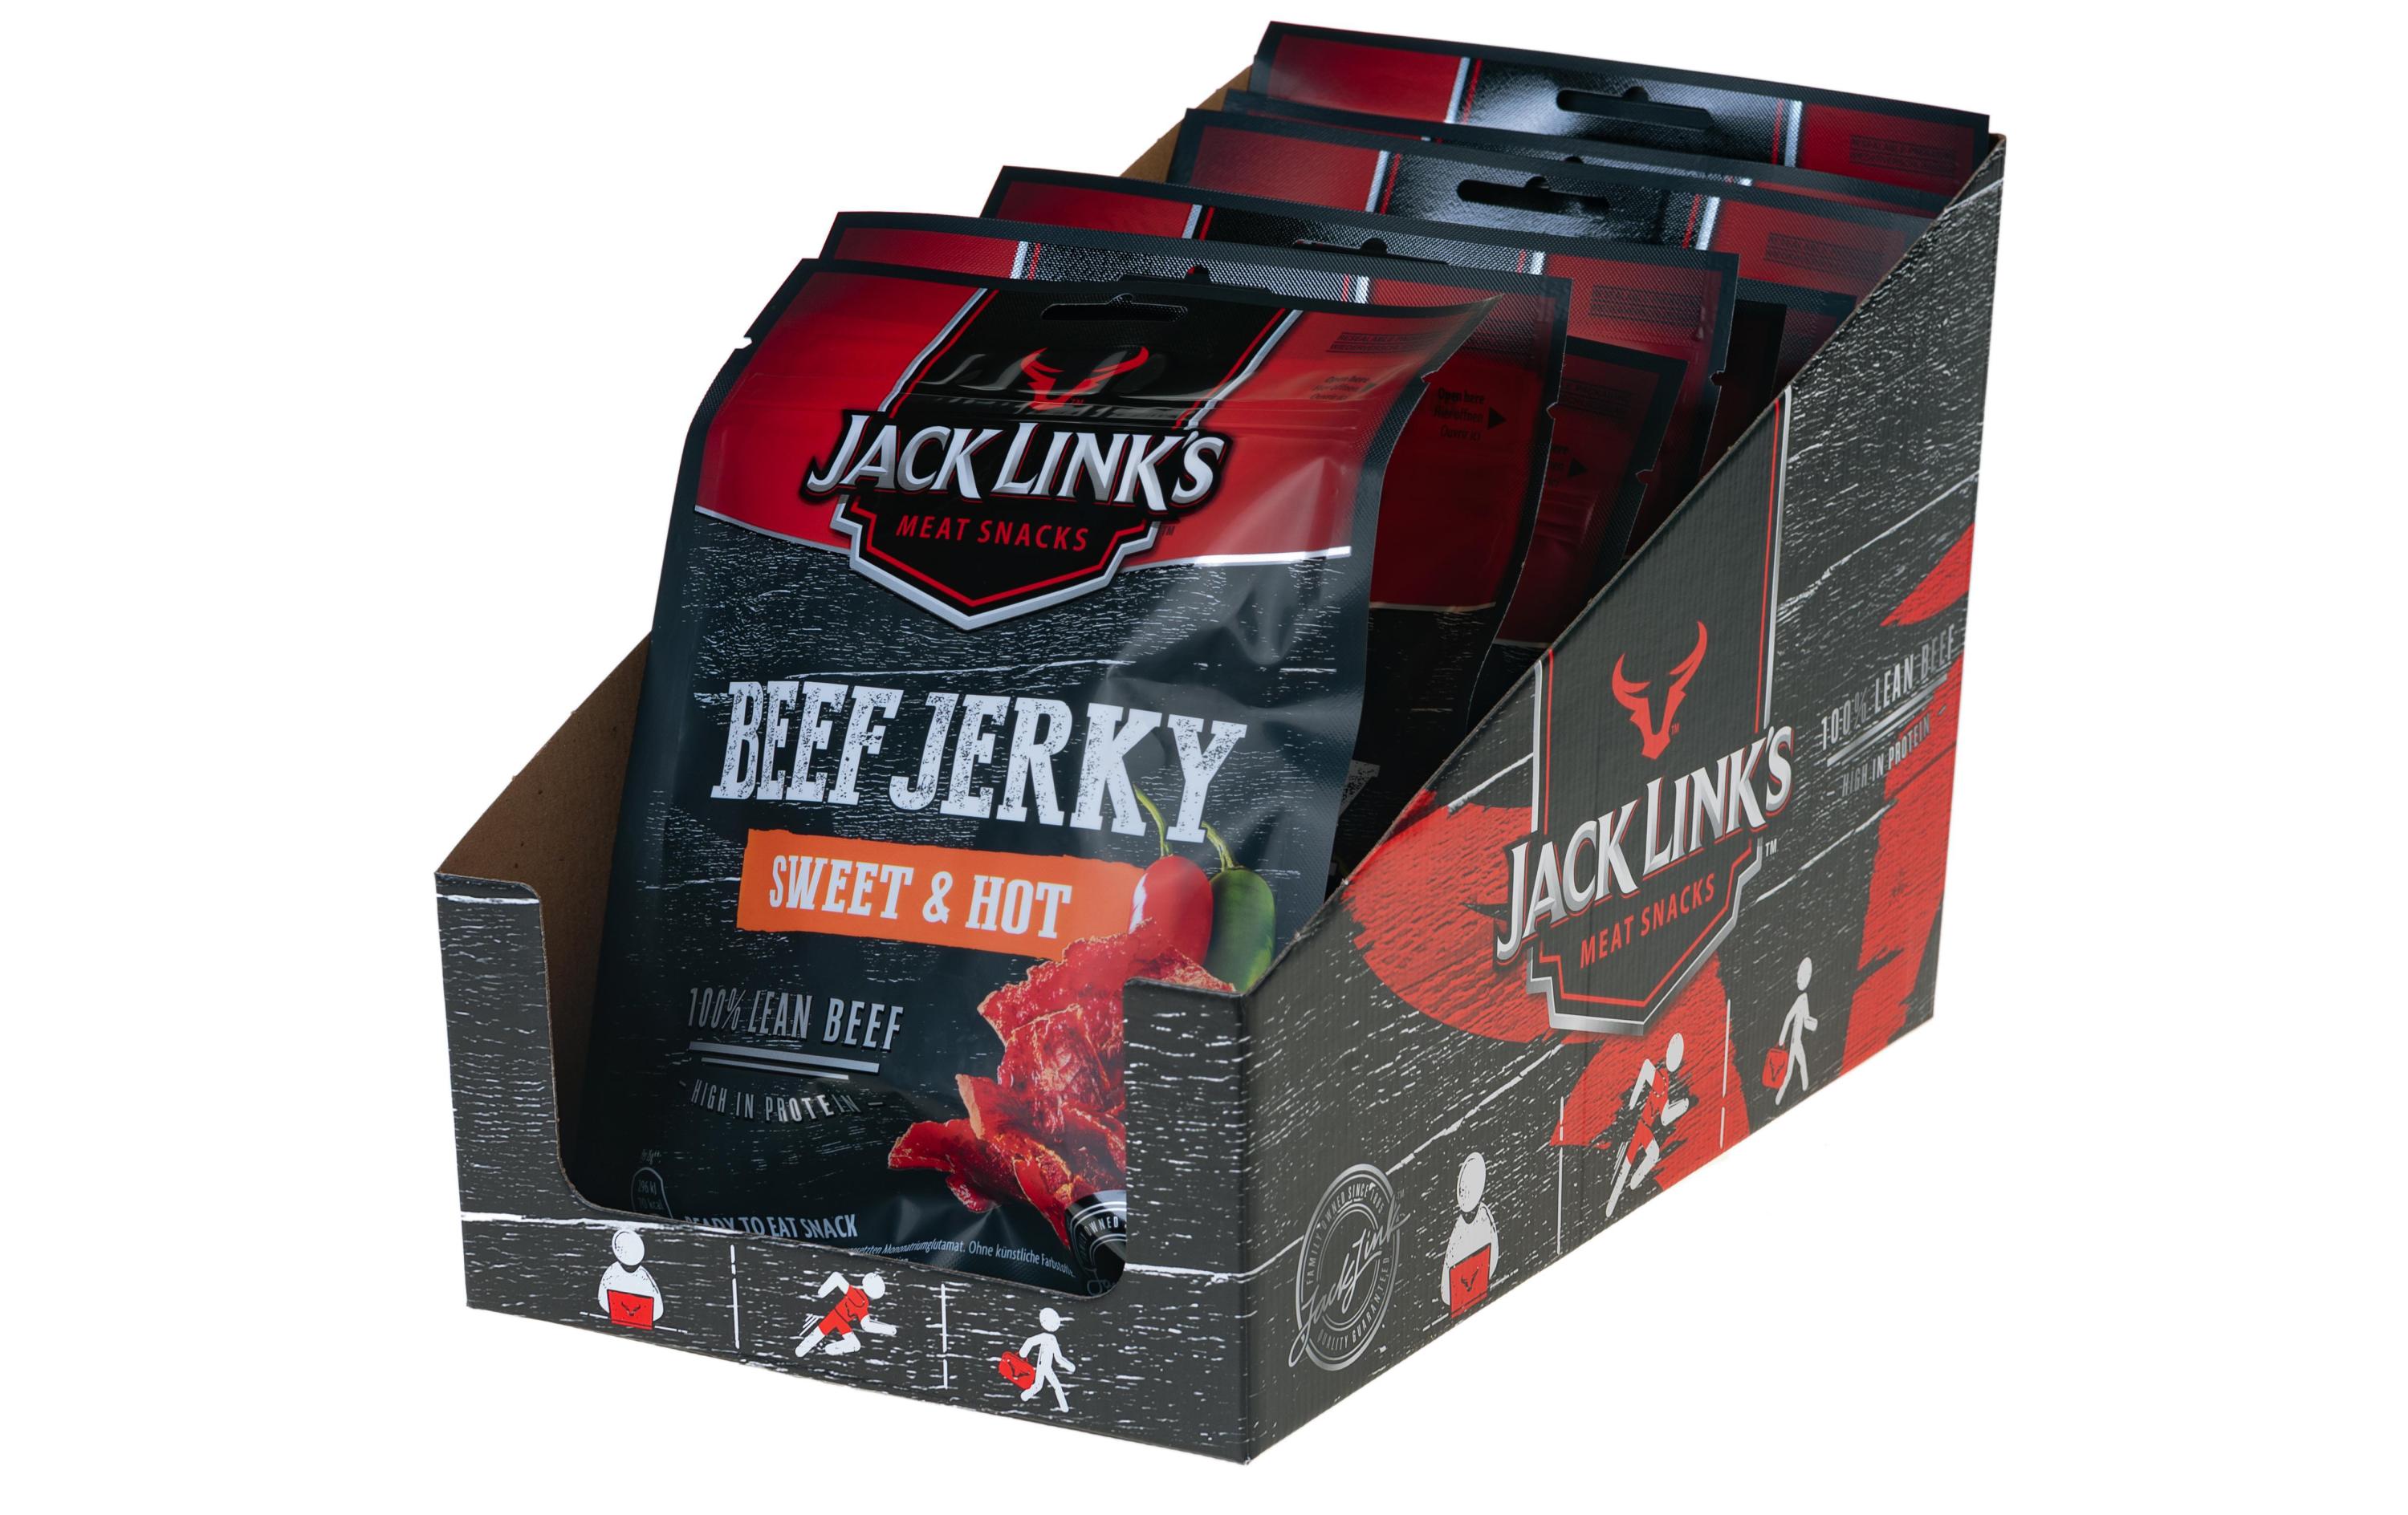 Jack Link's Fleischsnack Beef Jerky Sweet & Hot 12 x 70 g